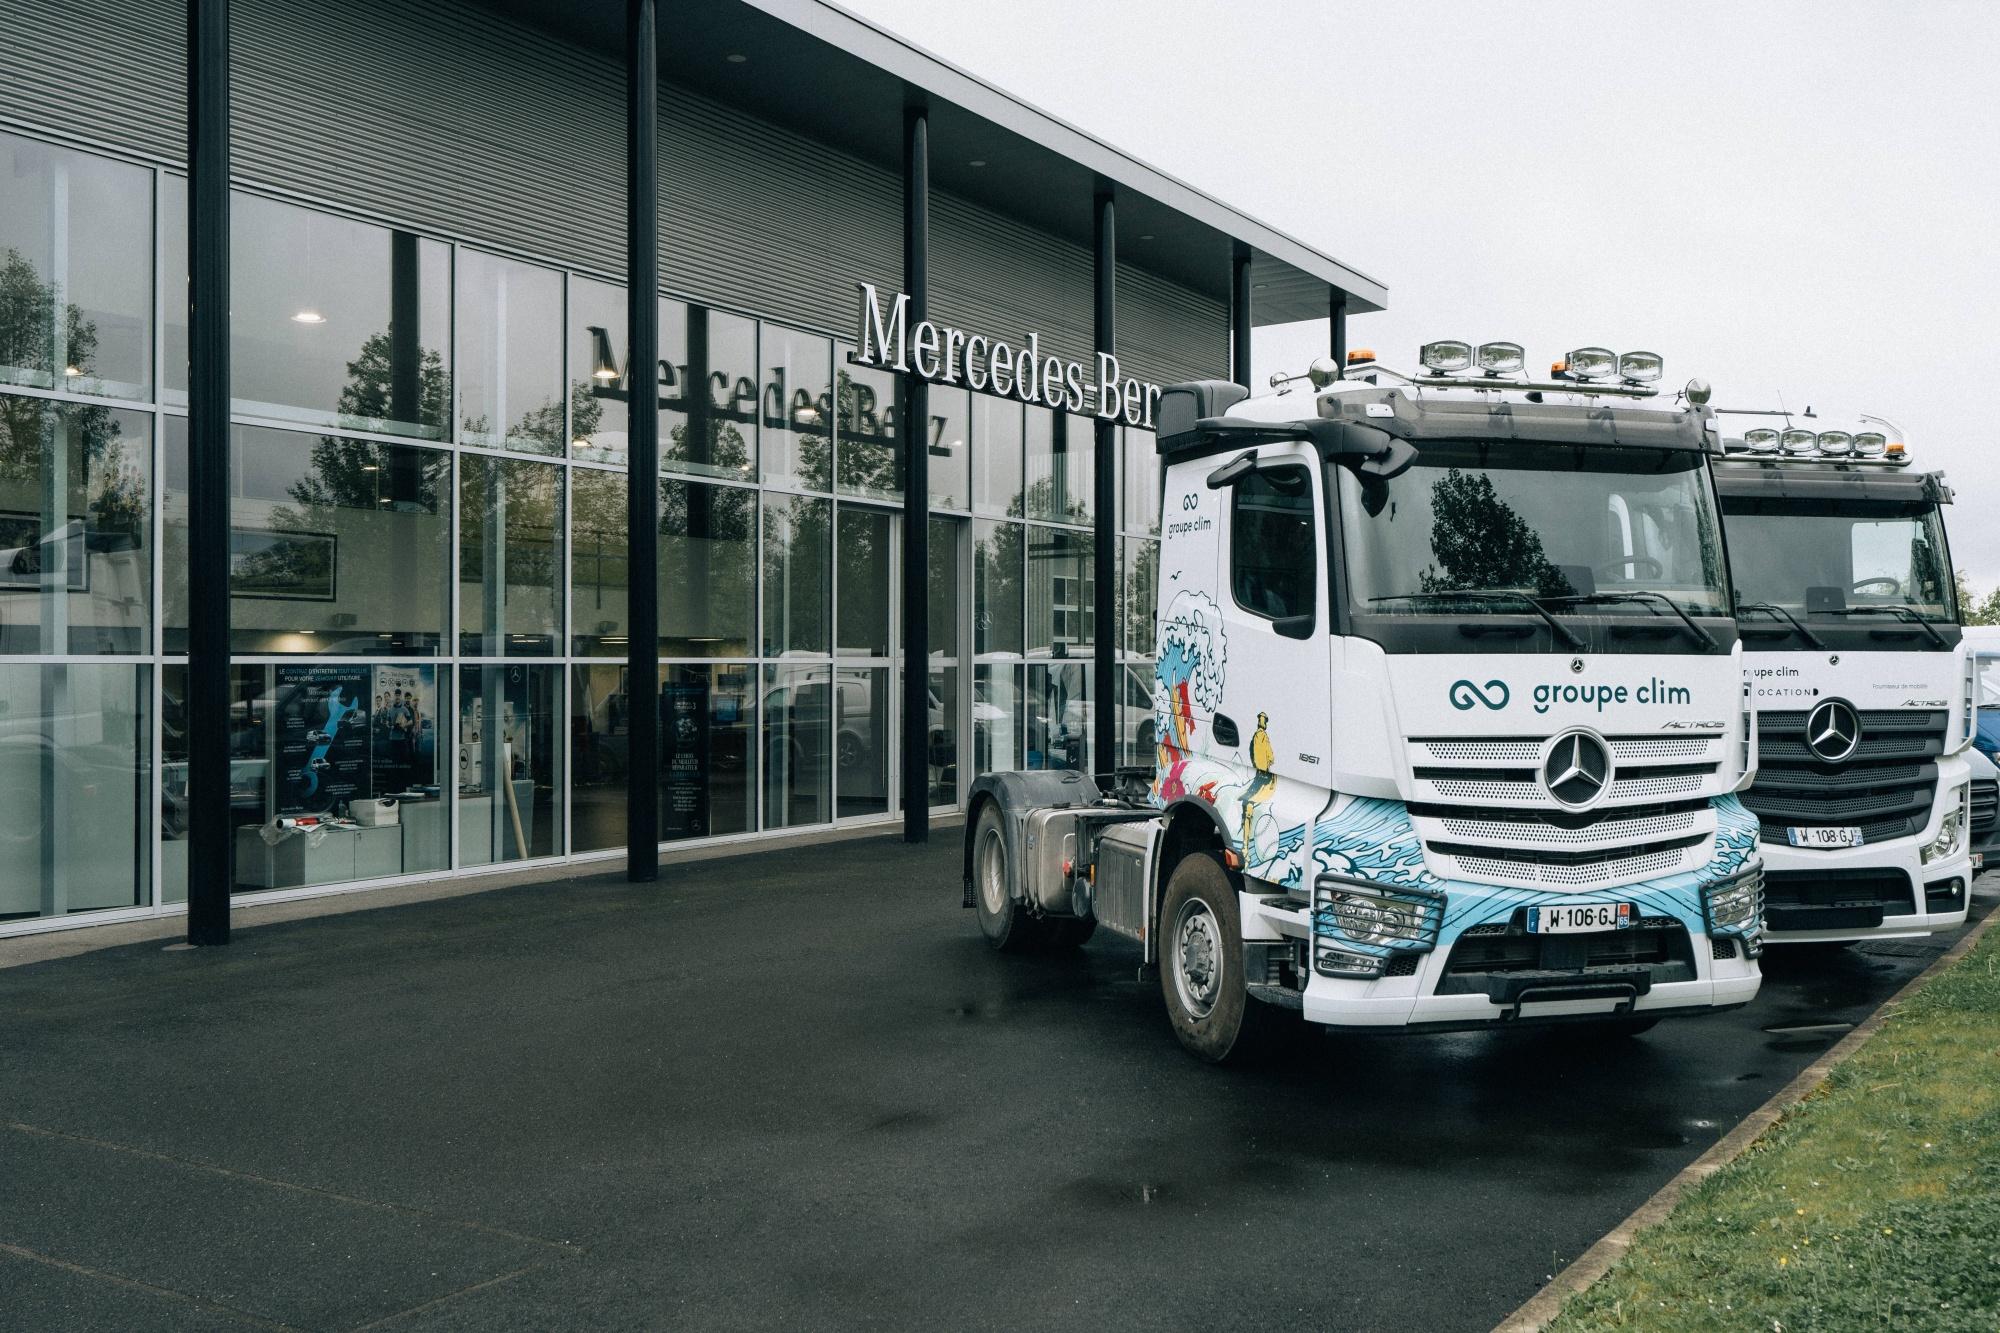 Mercedes-benz Utilitaires Et Camions - Groupe Clim - Pau Serres Castet